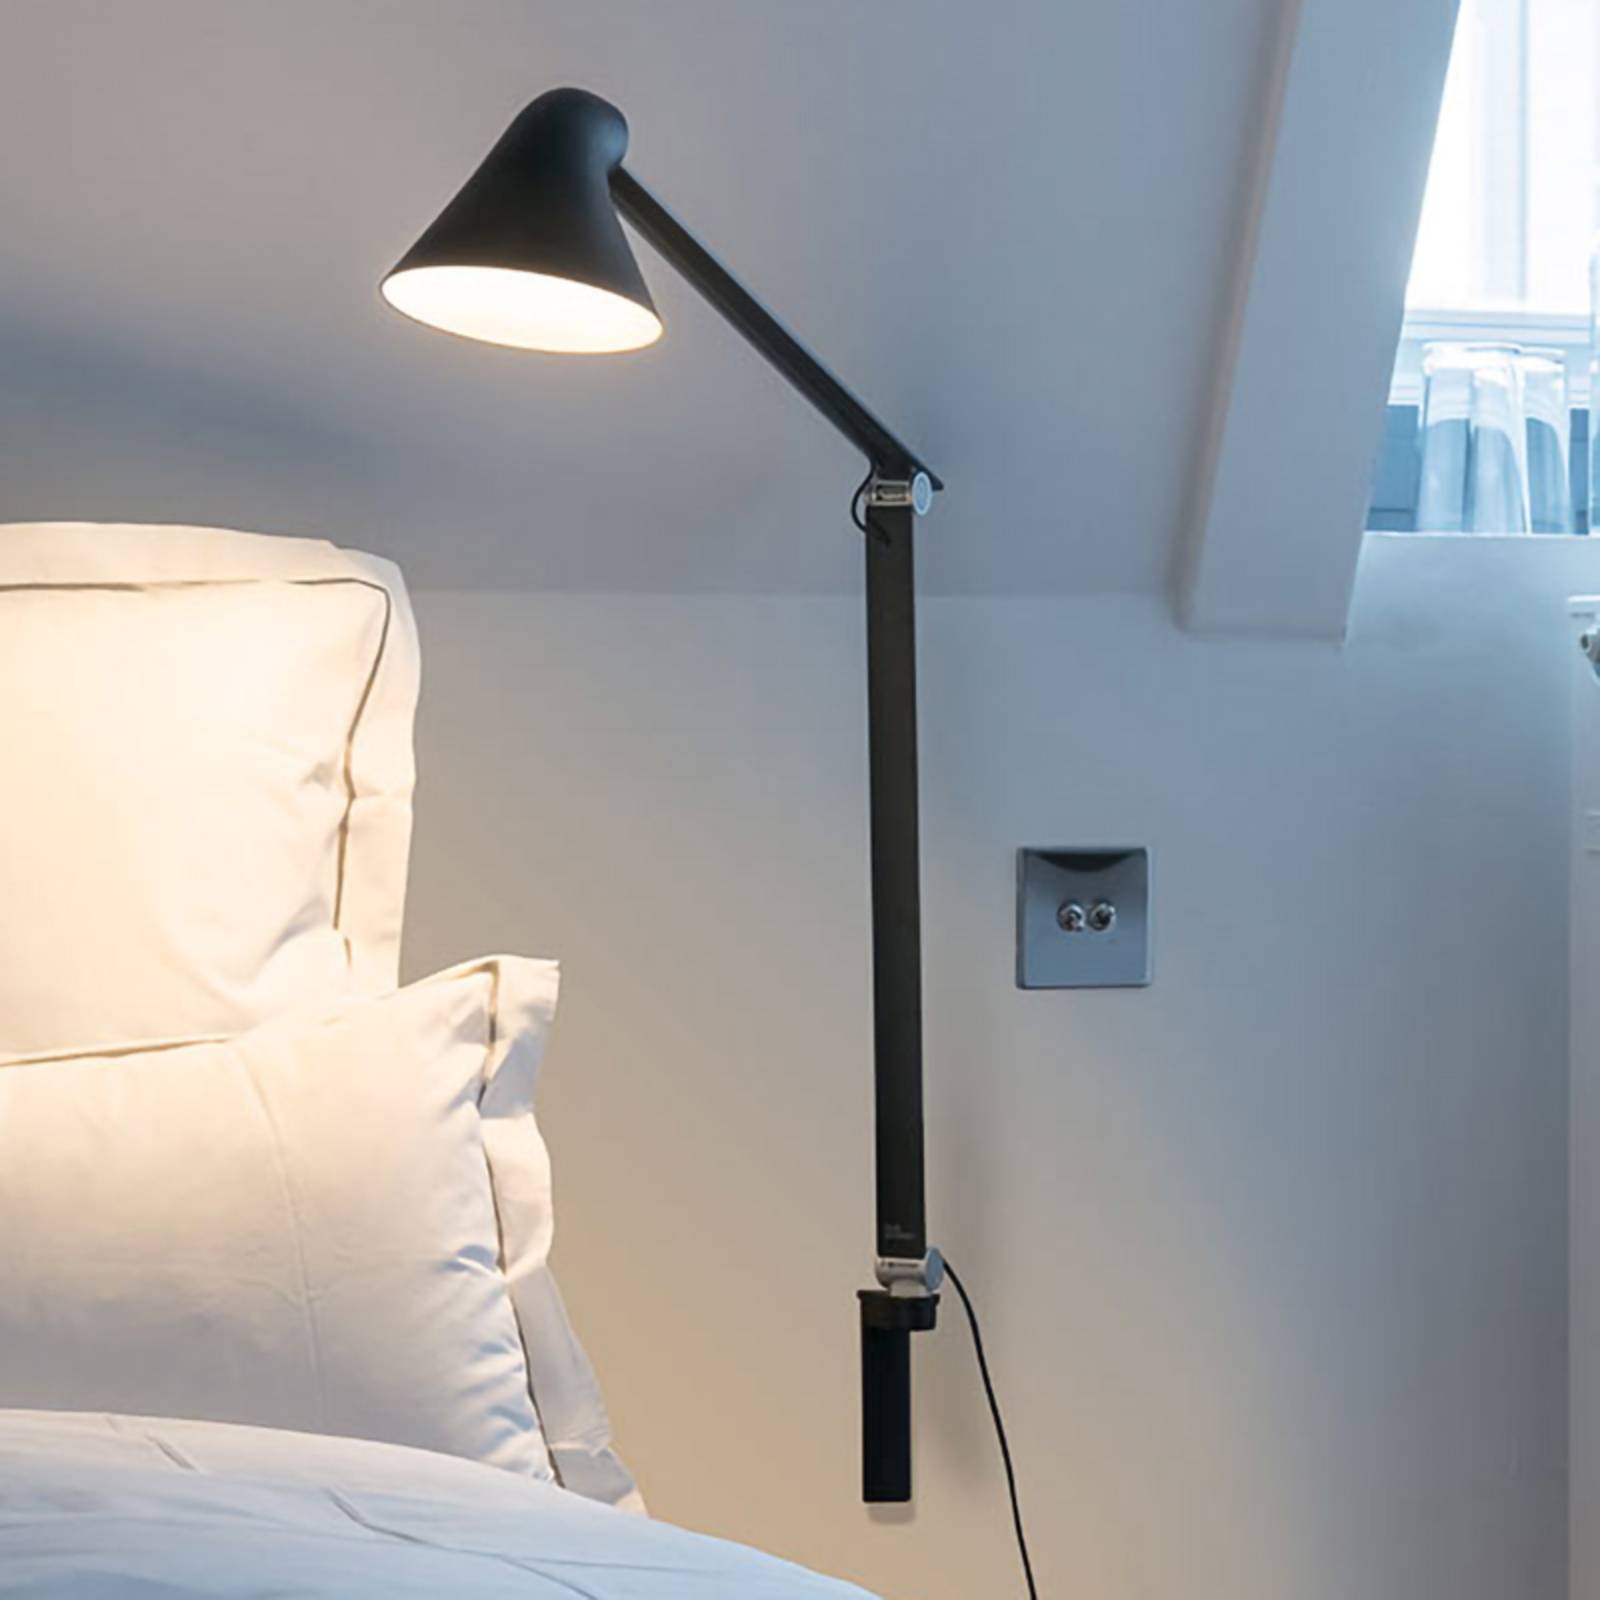 Louis Poulsen LED wandlamp met lange arm | Lampen24.nl